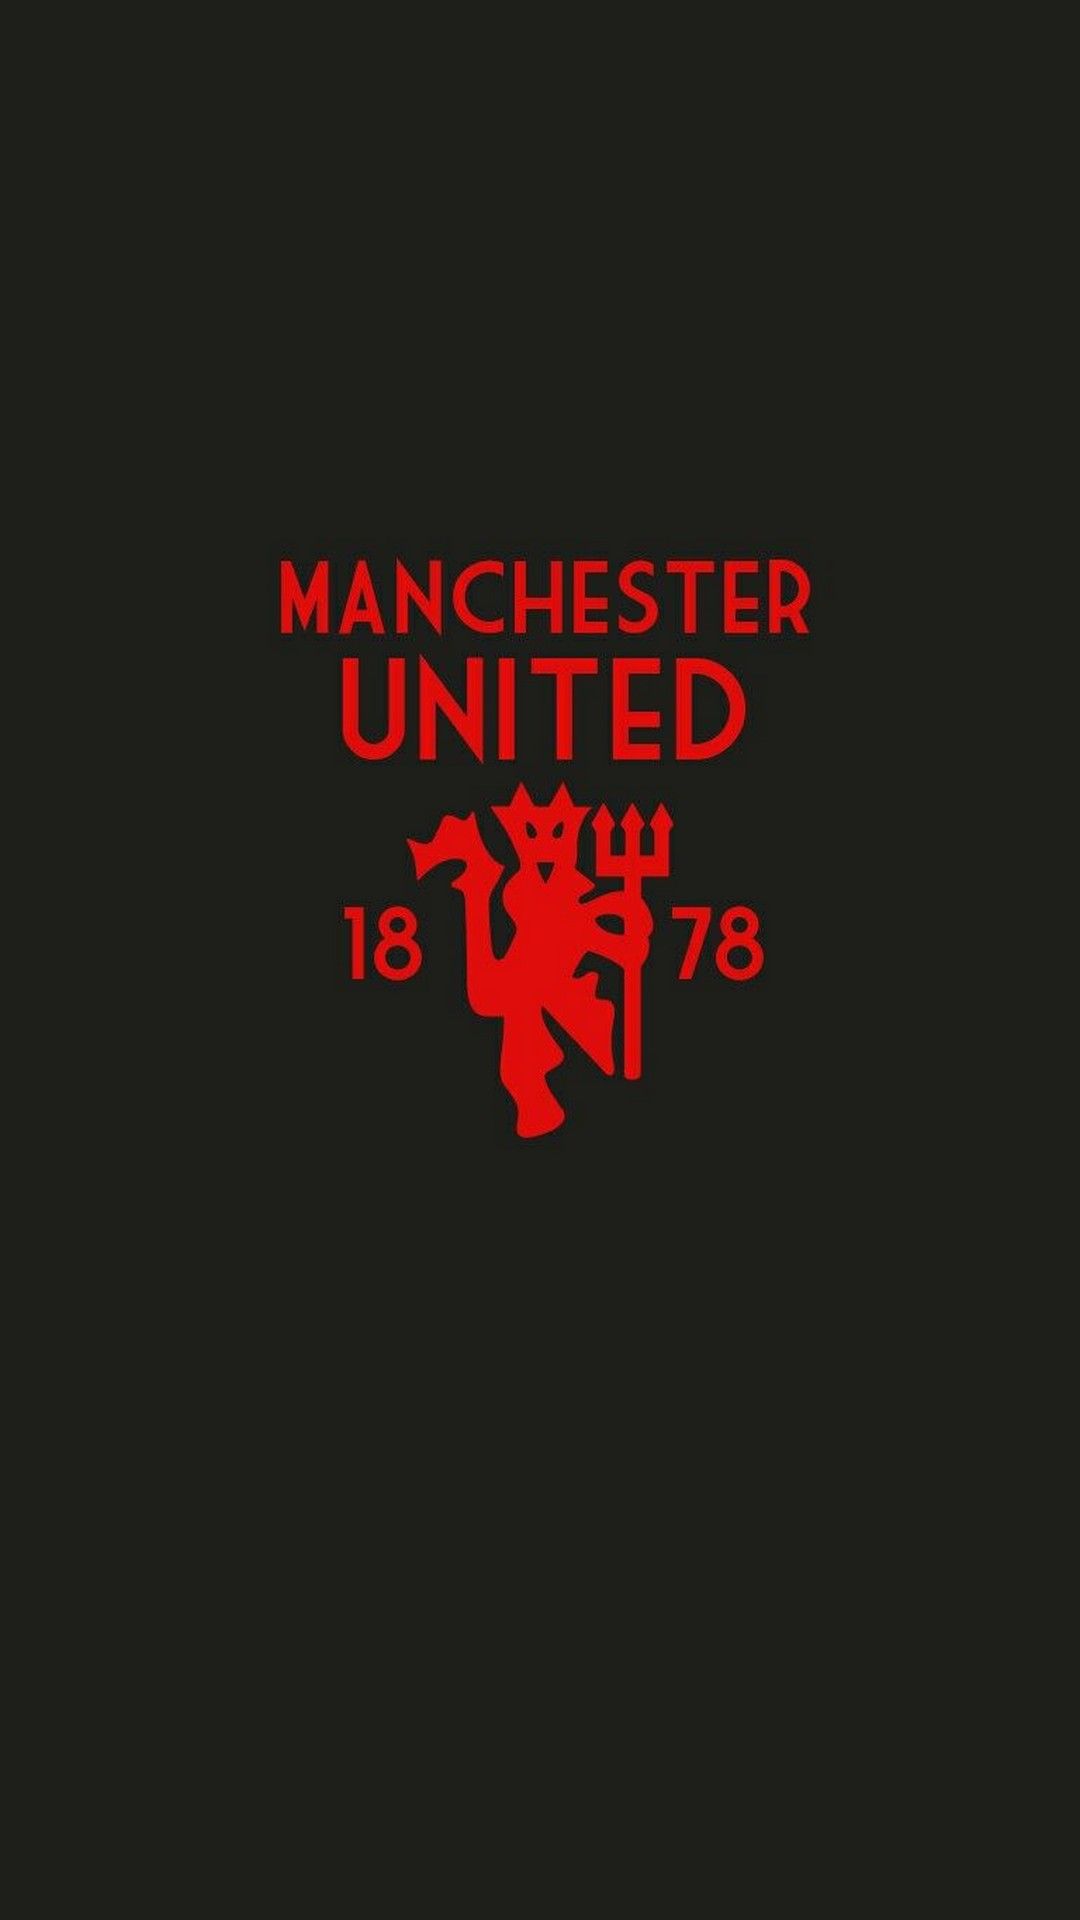 Manchester United Wallpaper For Mobile Football Wallpaper